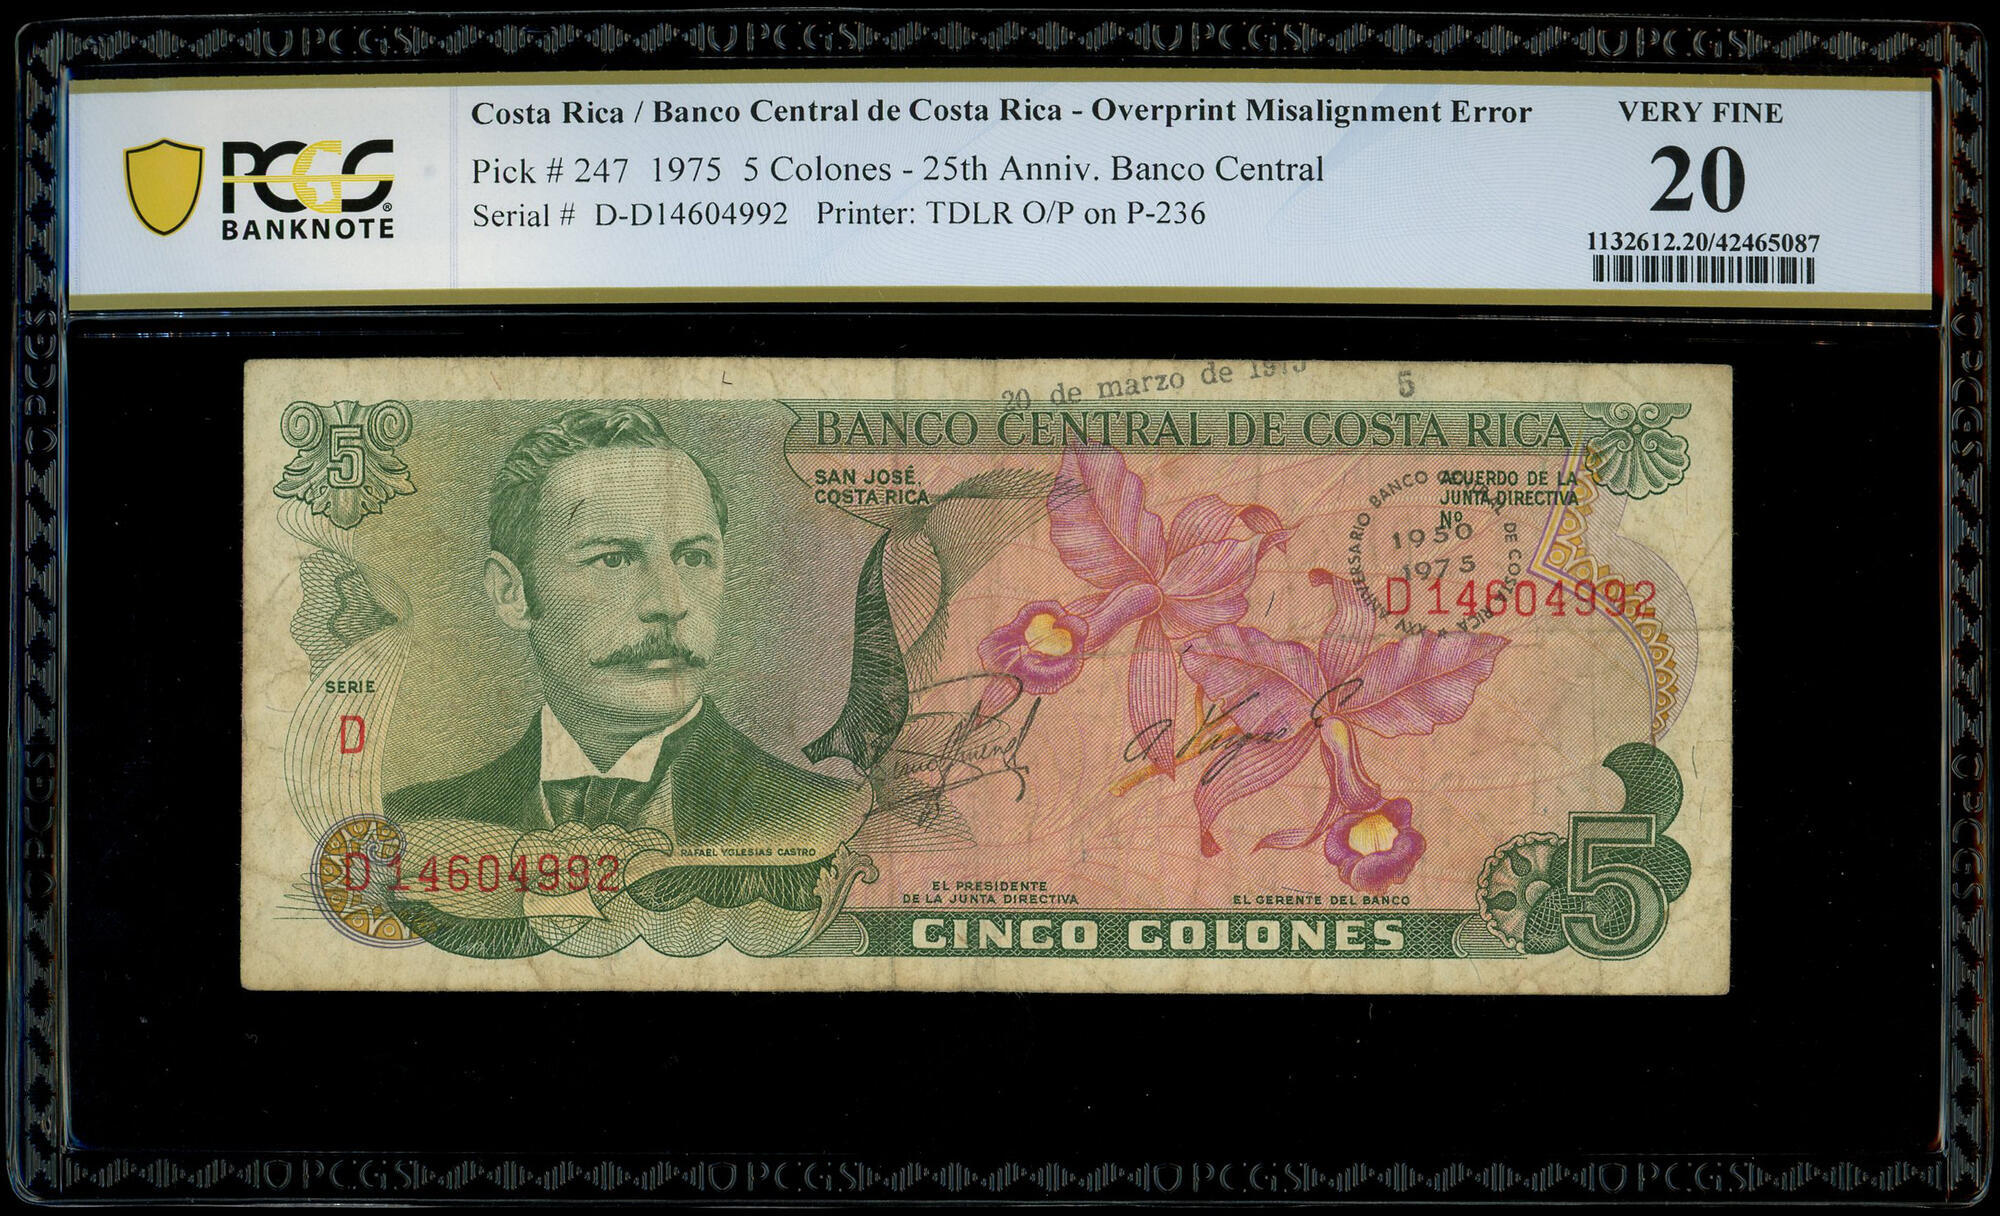 COSTA RICA 5 COLONES 2-10-1985 P 236 UNC 